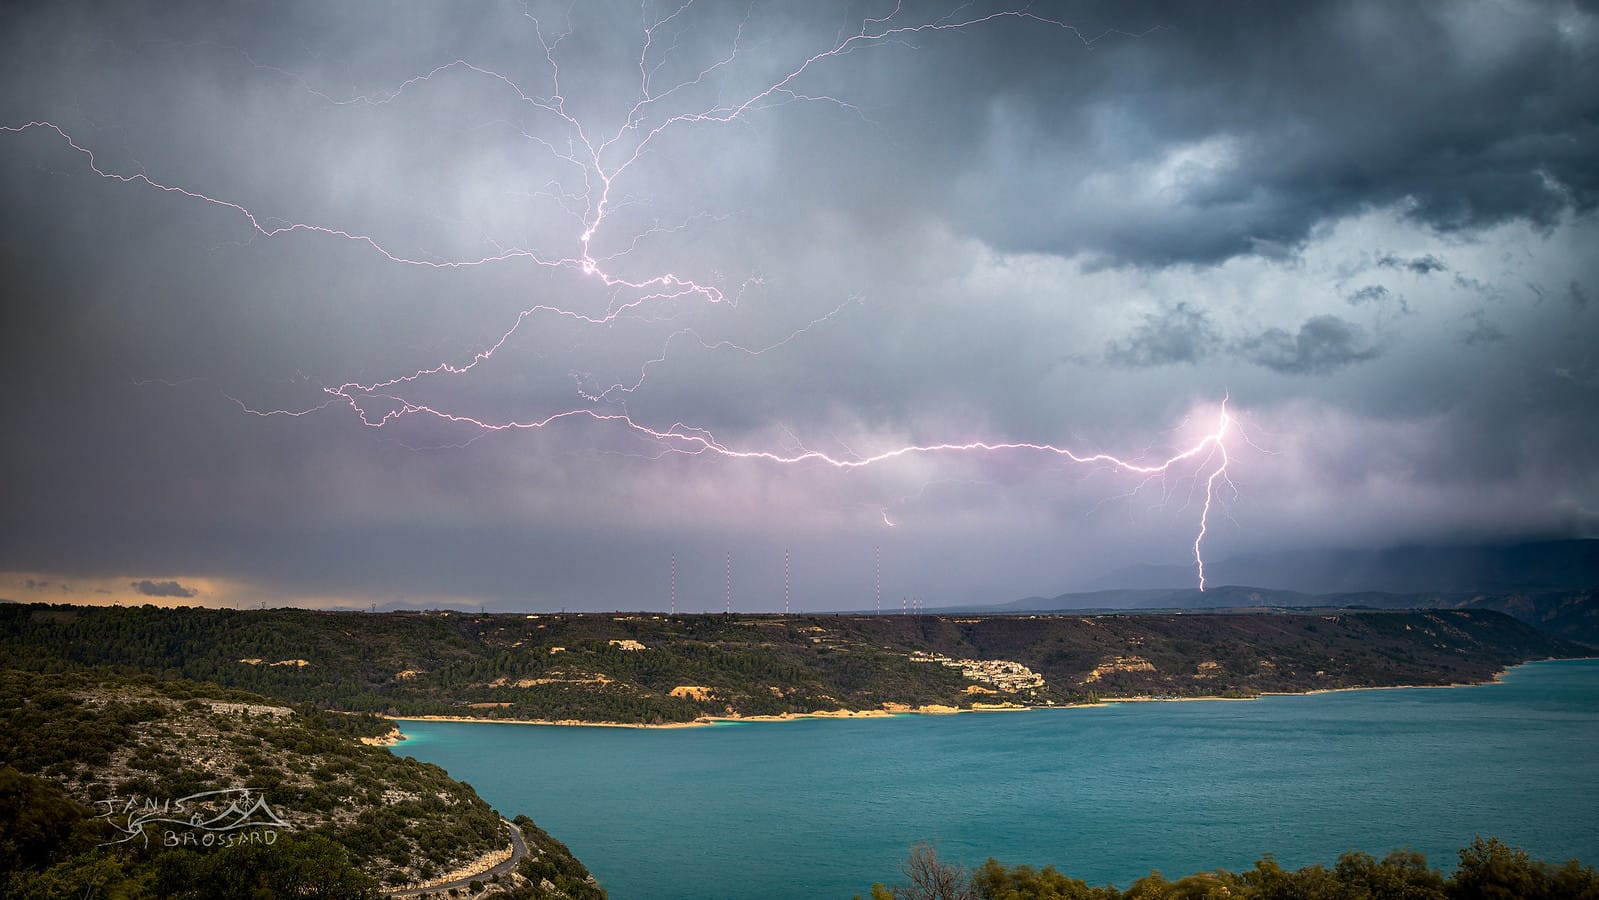 La saison orageuse dans le sud Est de la France commence tôt cette année , des conditions identiques à celles observées normalement dès la mi-Mai !
En premier plan le lac de Sainte-Croix et en second le plateau de Valensole - 03/04/2021 19:30 - Janis BROSSARD